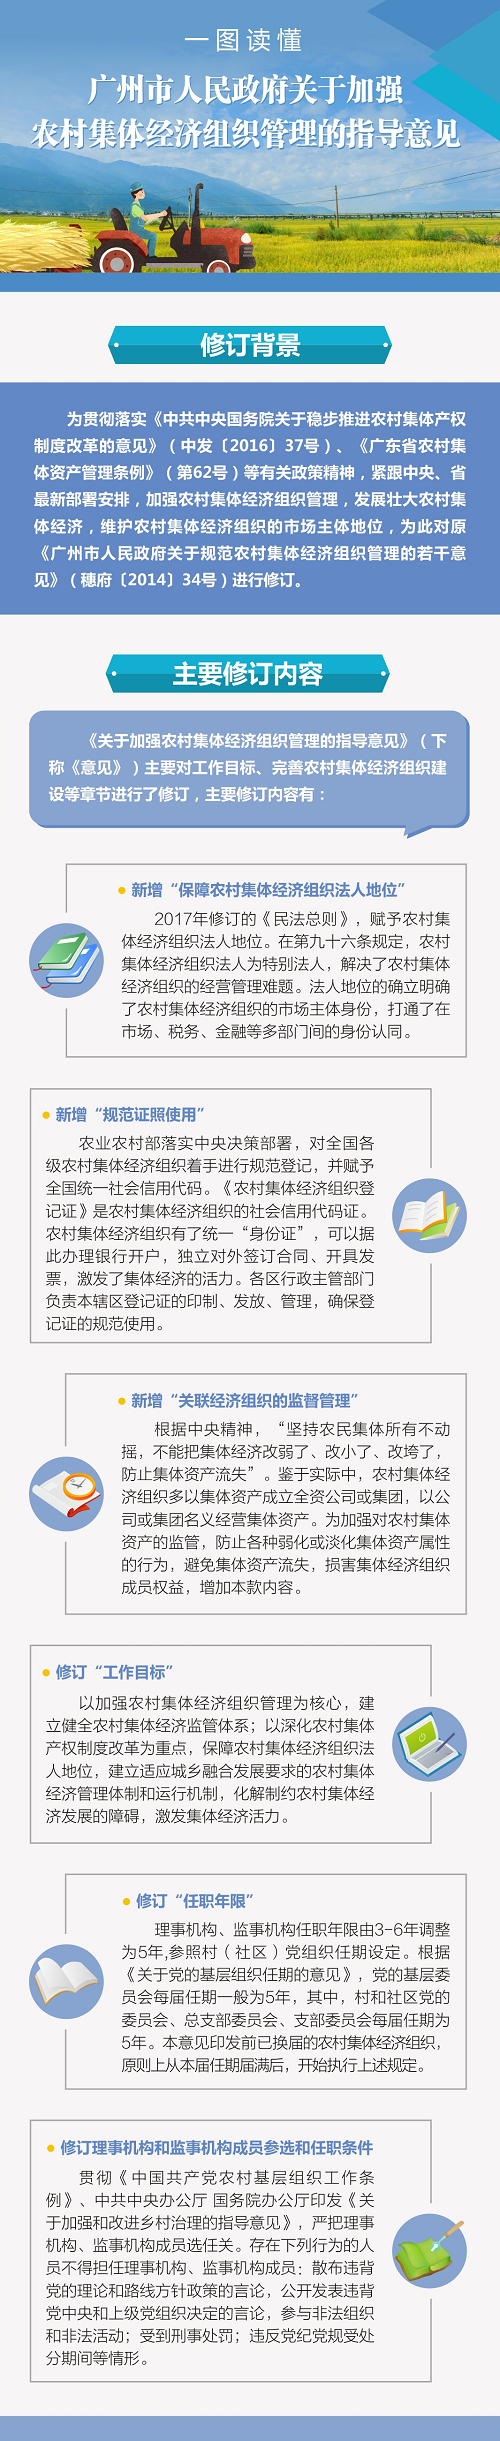 图解《广州市人民政府关于加强农村集体经济组织管理的指导意见》.bmp